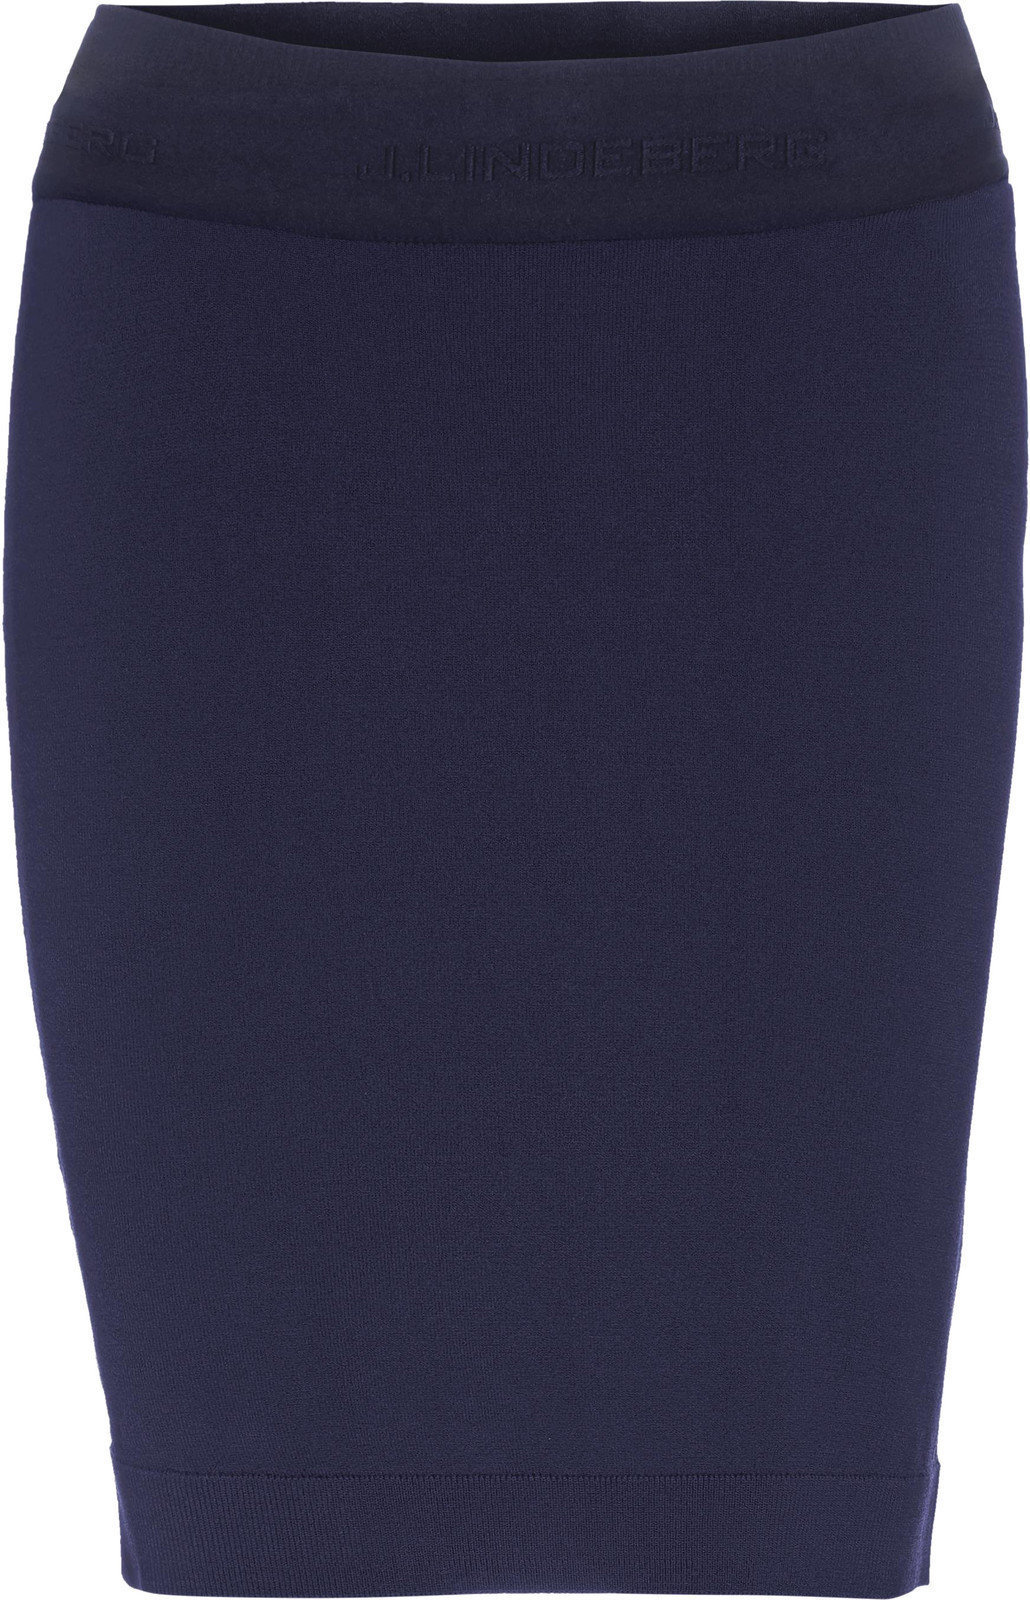 Skirt / Dress J.Lindeberg Merit Viscose Nylon Womens Skirt Navy S